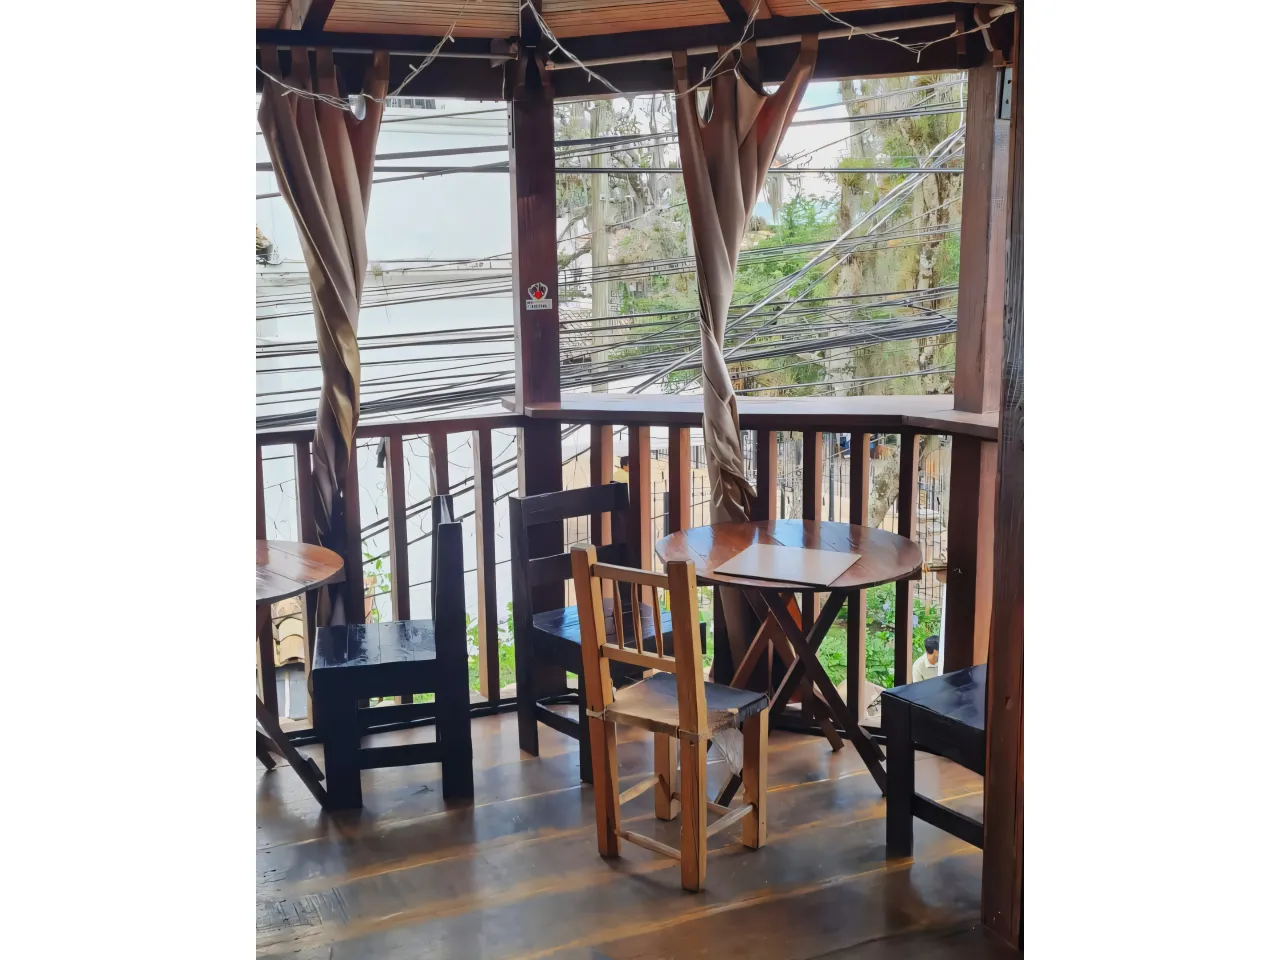 Mesas redondas de madera, sillas de color negro a juego, balcón de madera con cortinas de color café.